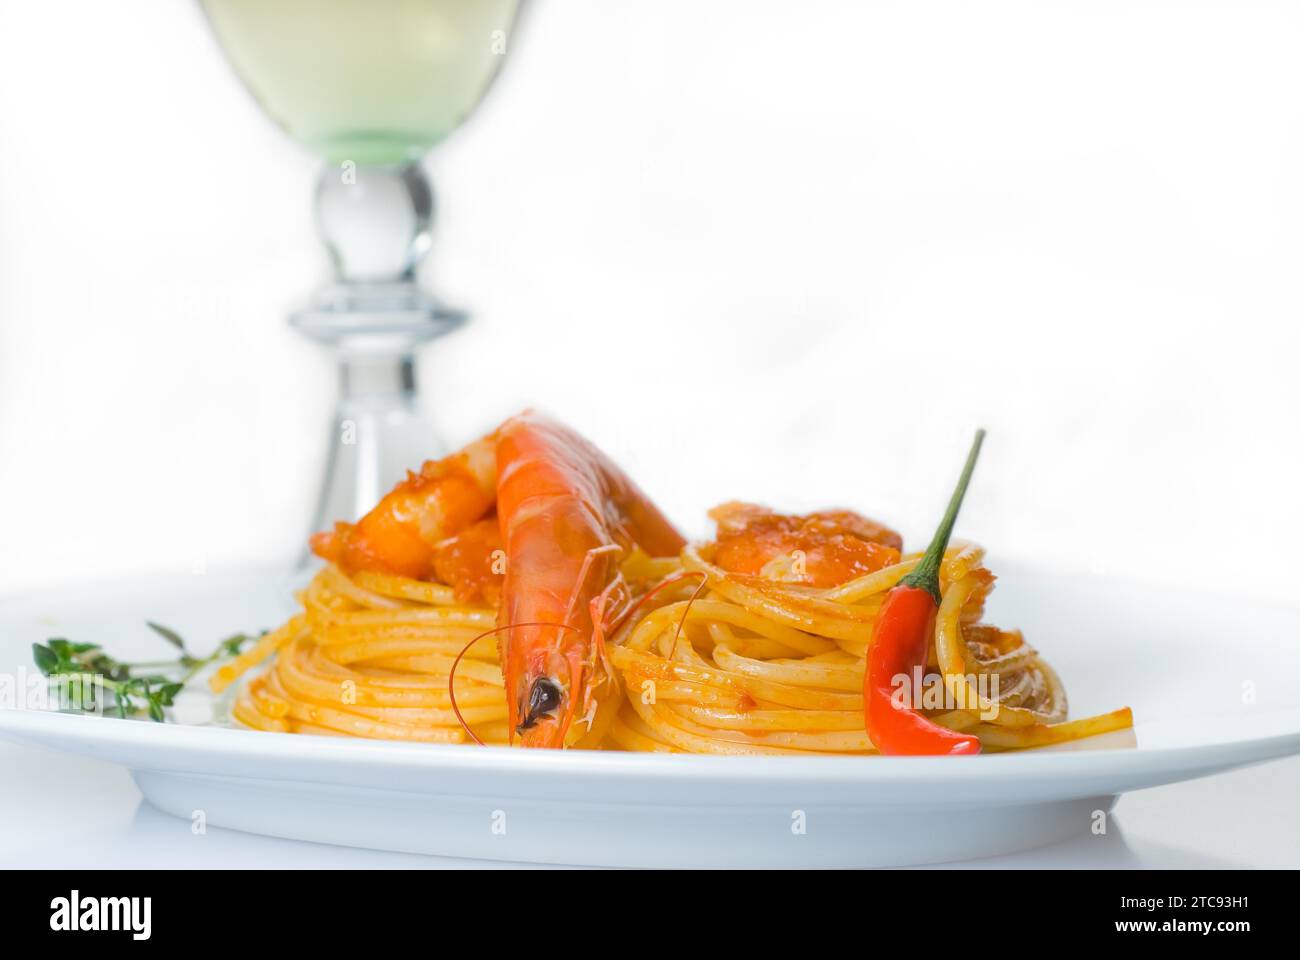 Pasta de espagueti italiana y salsa de camarones picantes frescos, con una hierba de vino blanco seco en el fondo Foto de stock